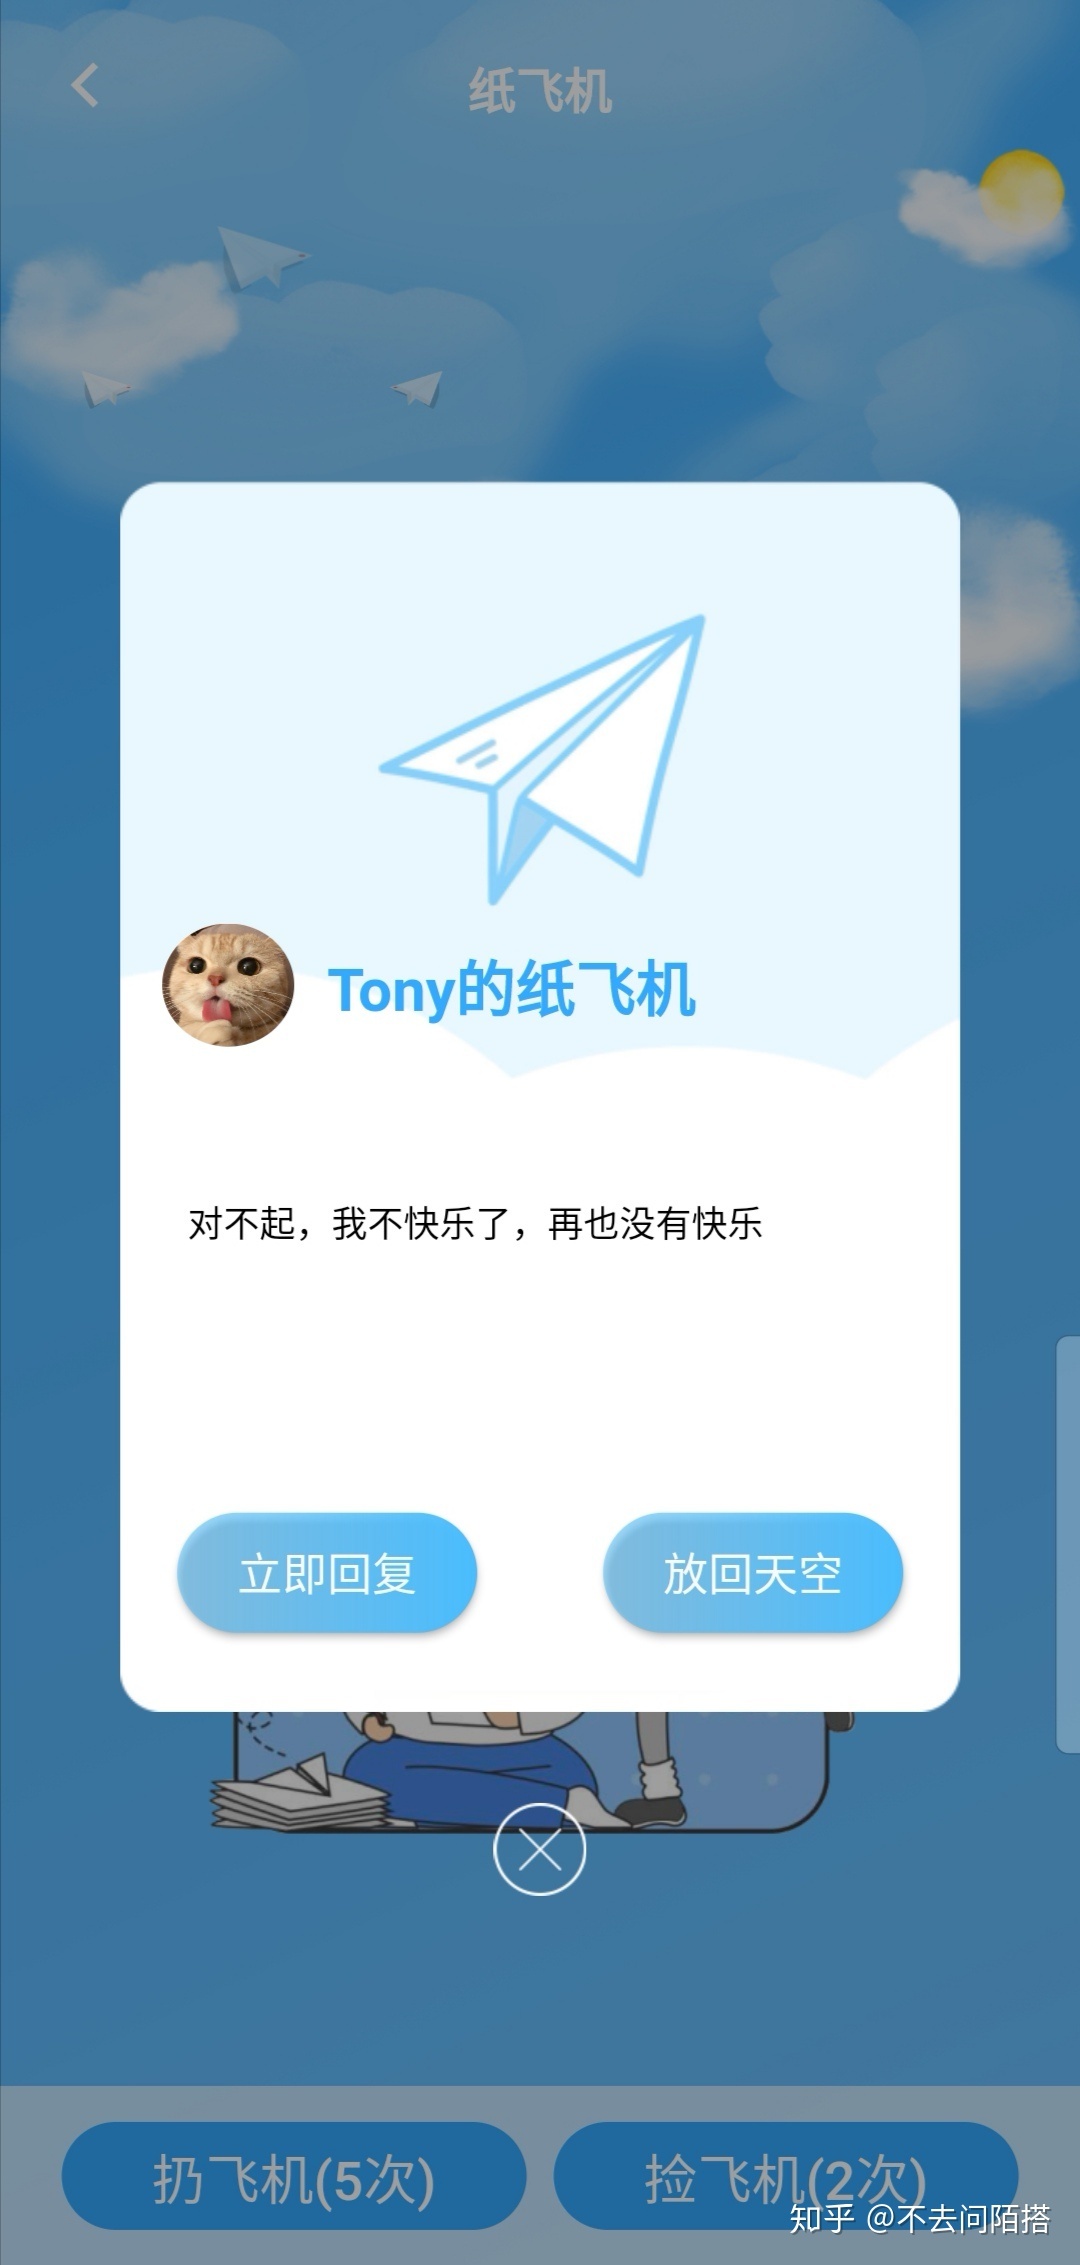 包含纸飞机app下载中文版最新的词条